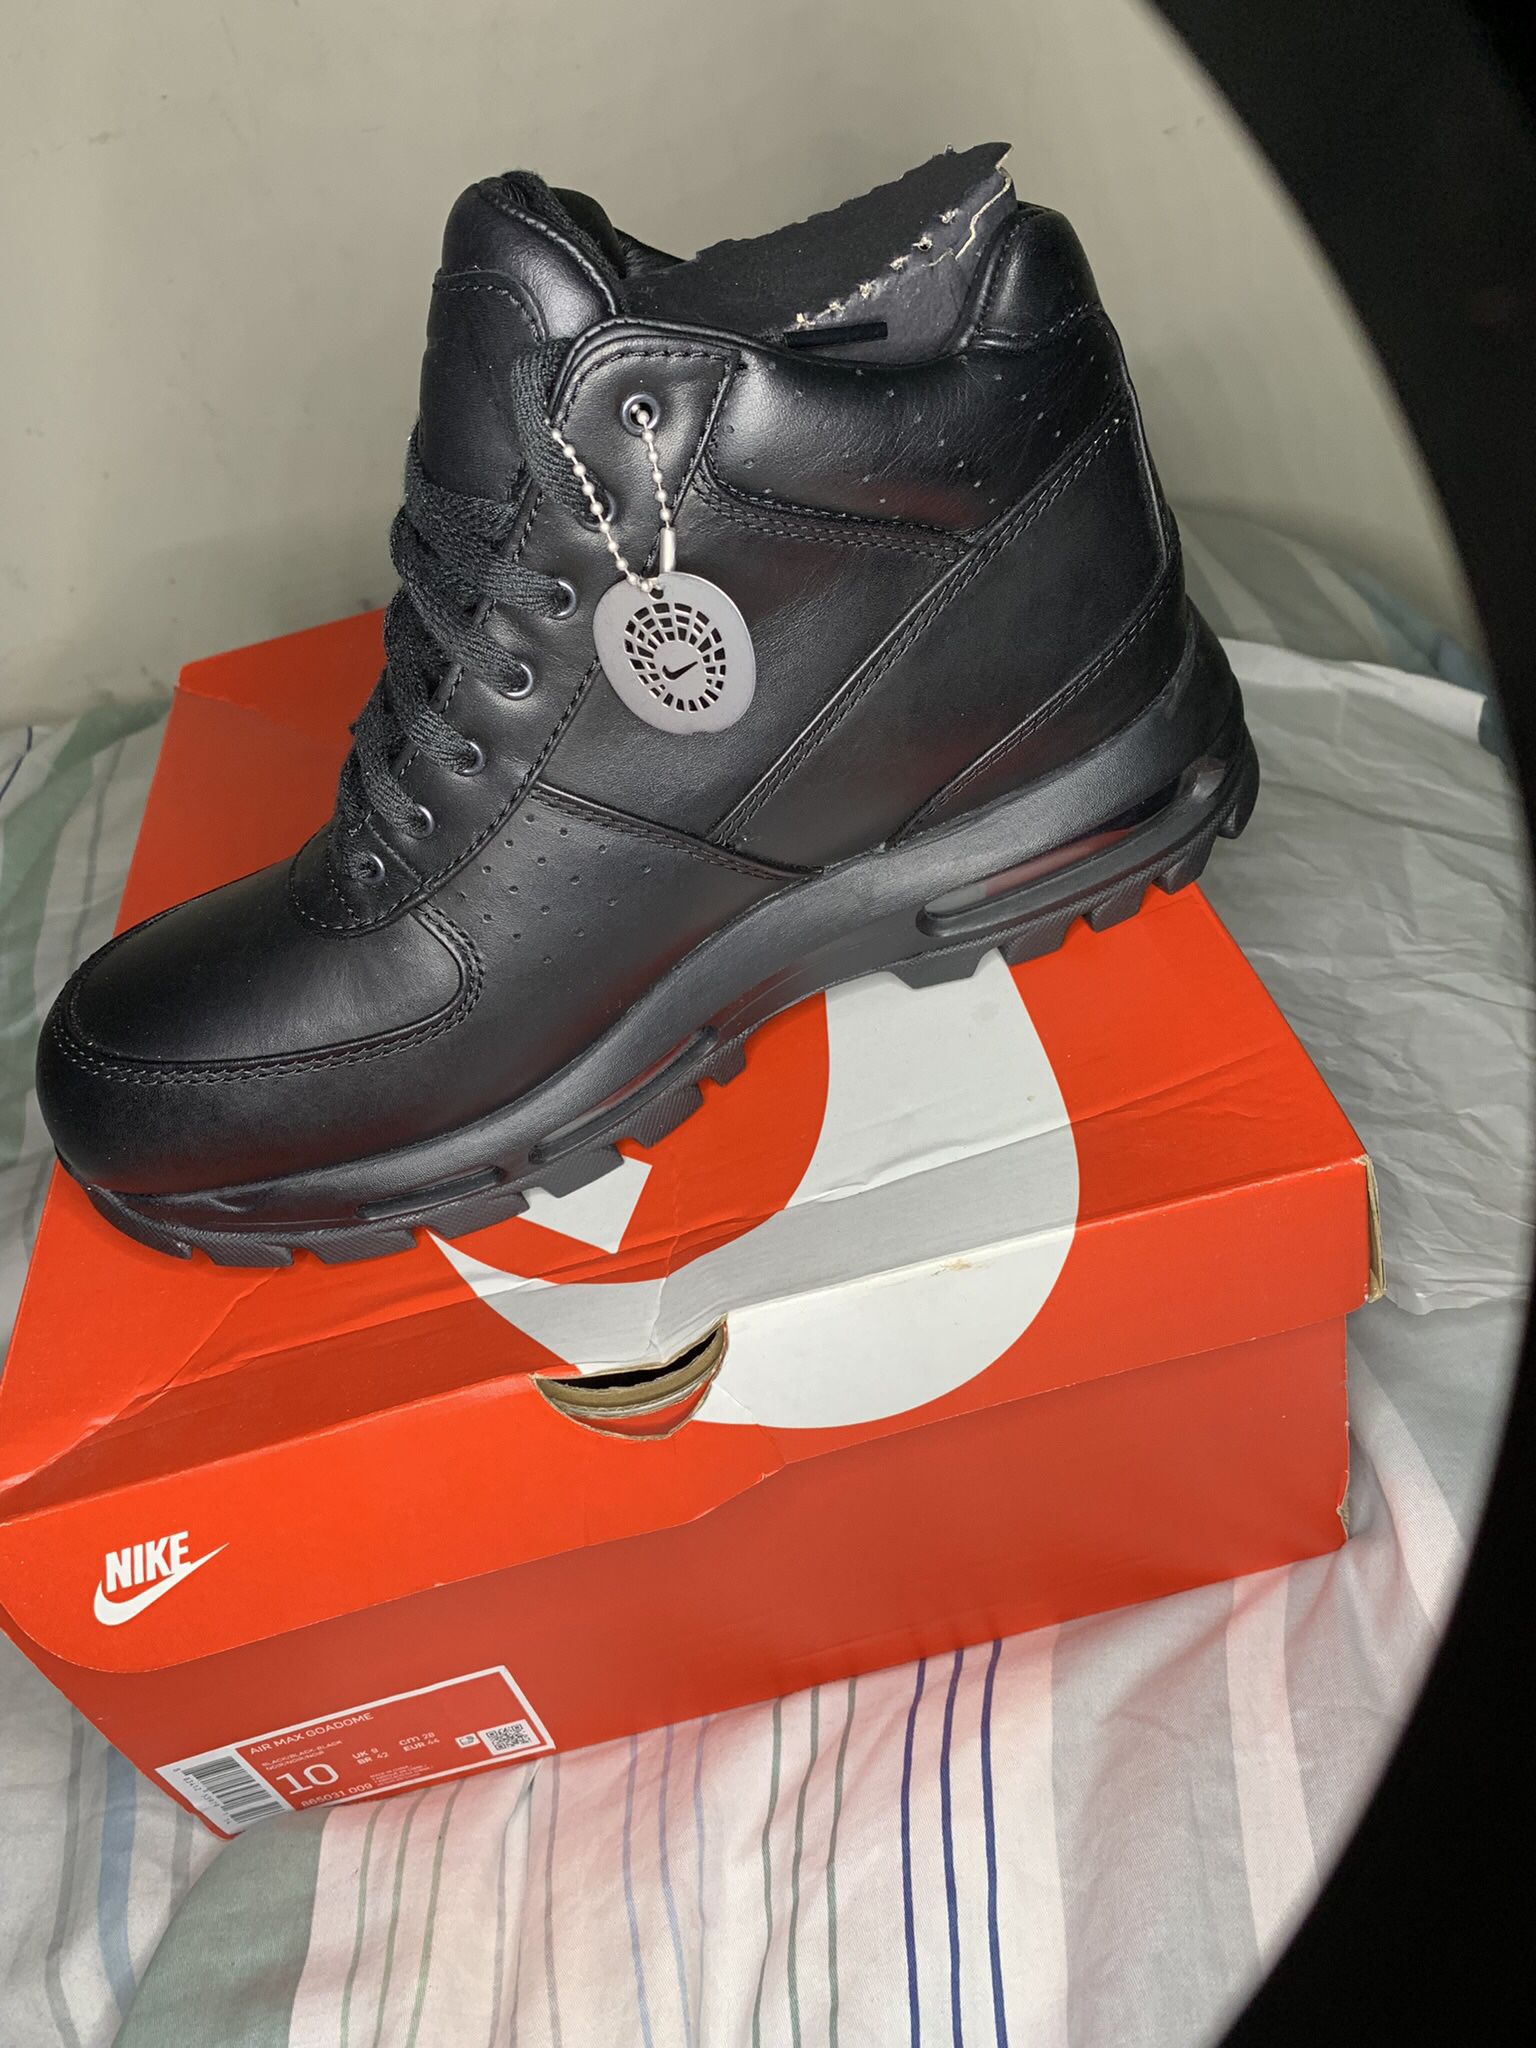 Men Nike Boots (black)   Size 10M/8w